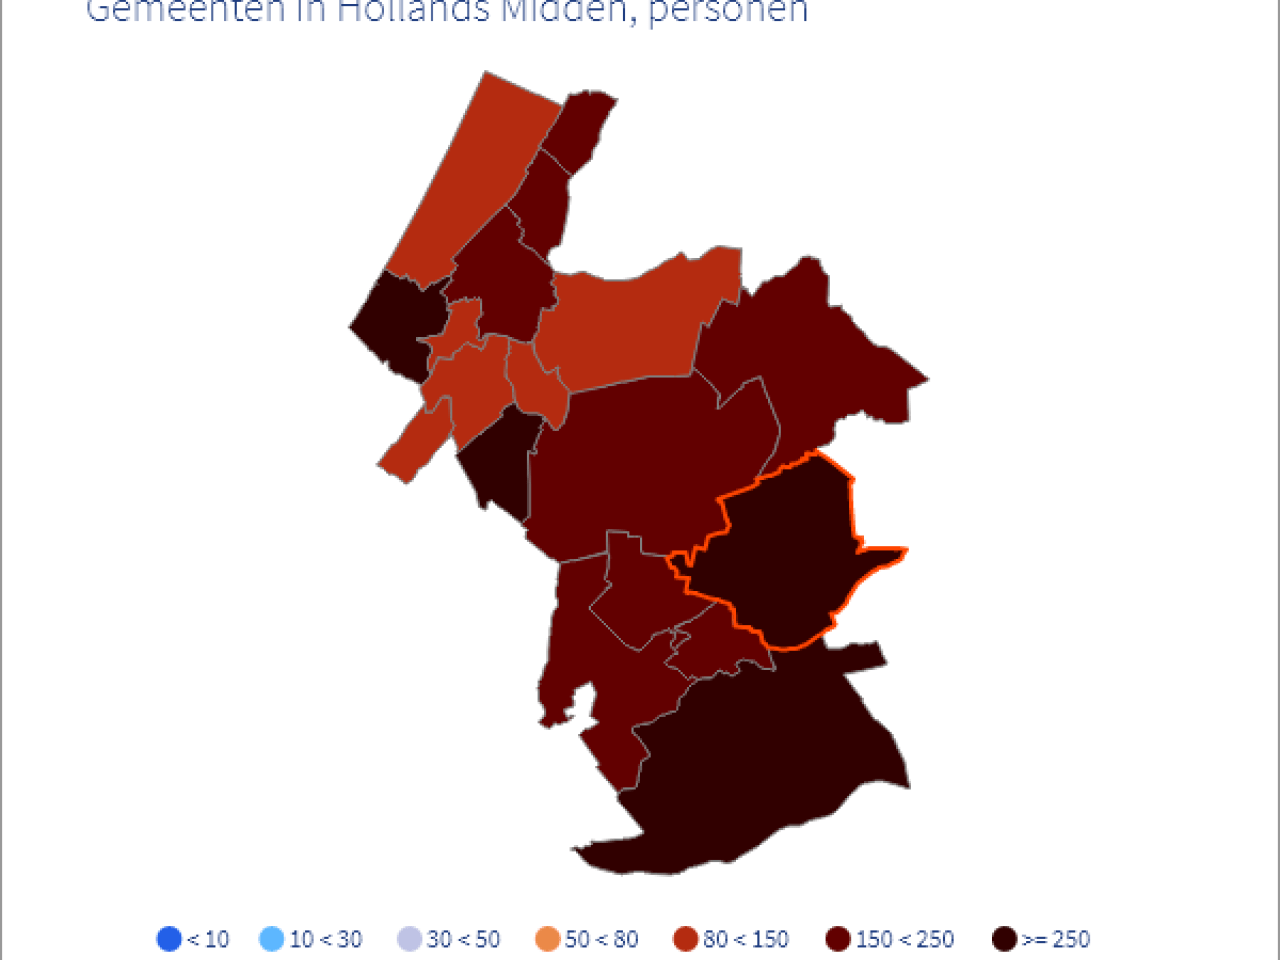 Schematische weergave van de hoeveelheid besmettingen in de gemeenten van Hollands Midden